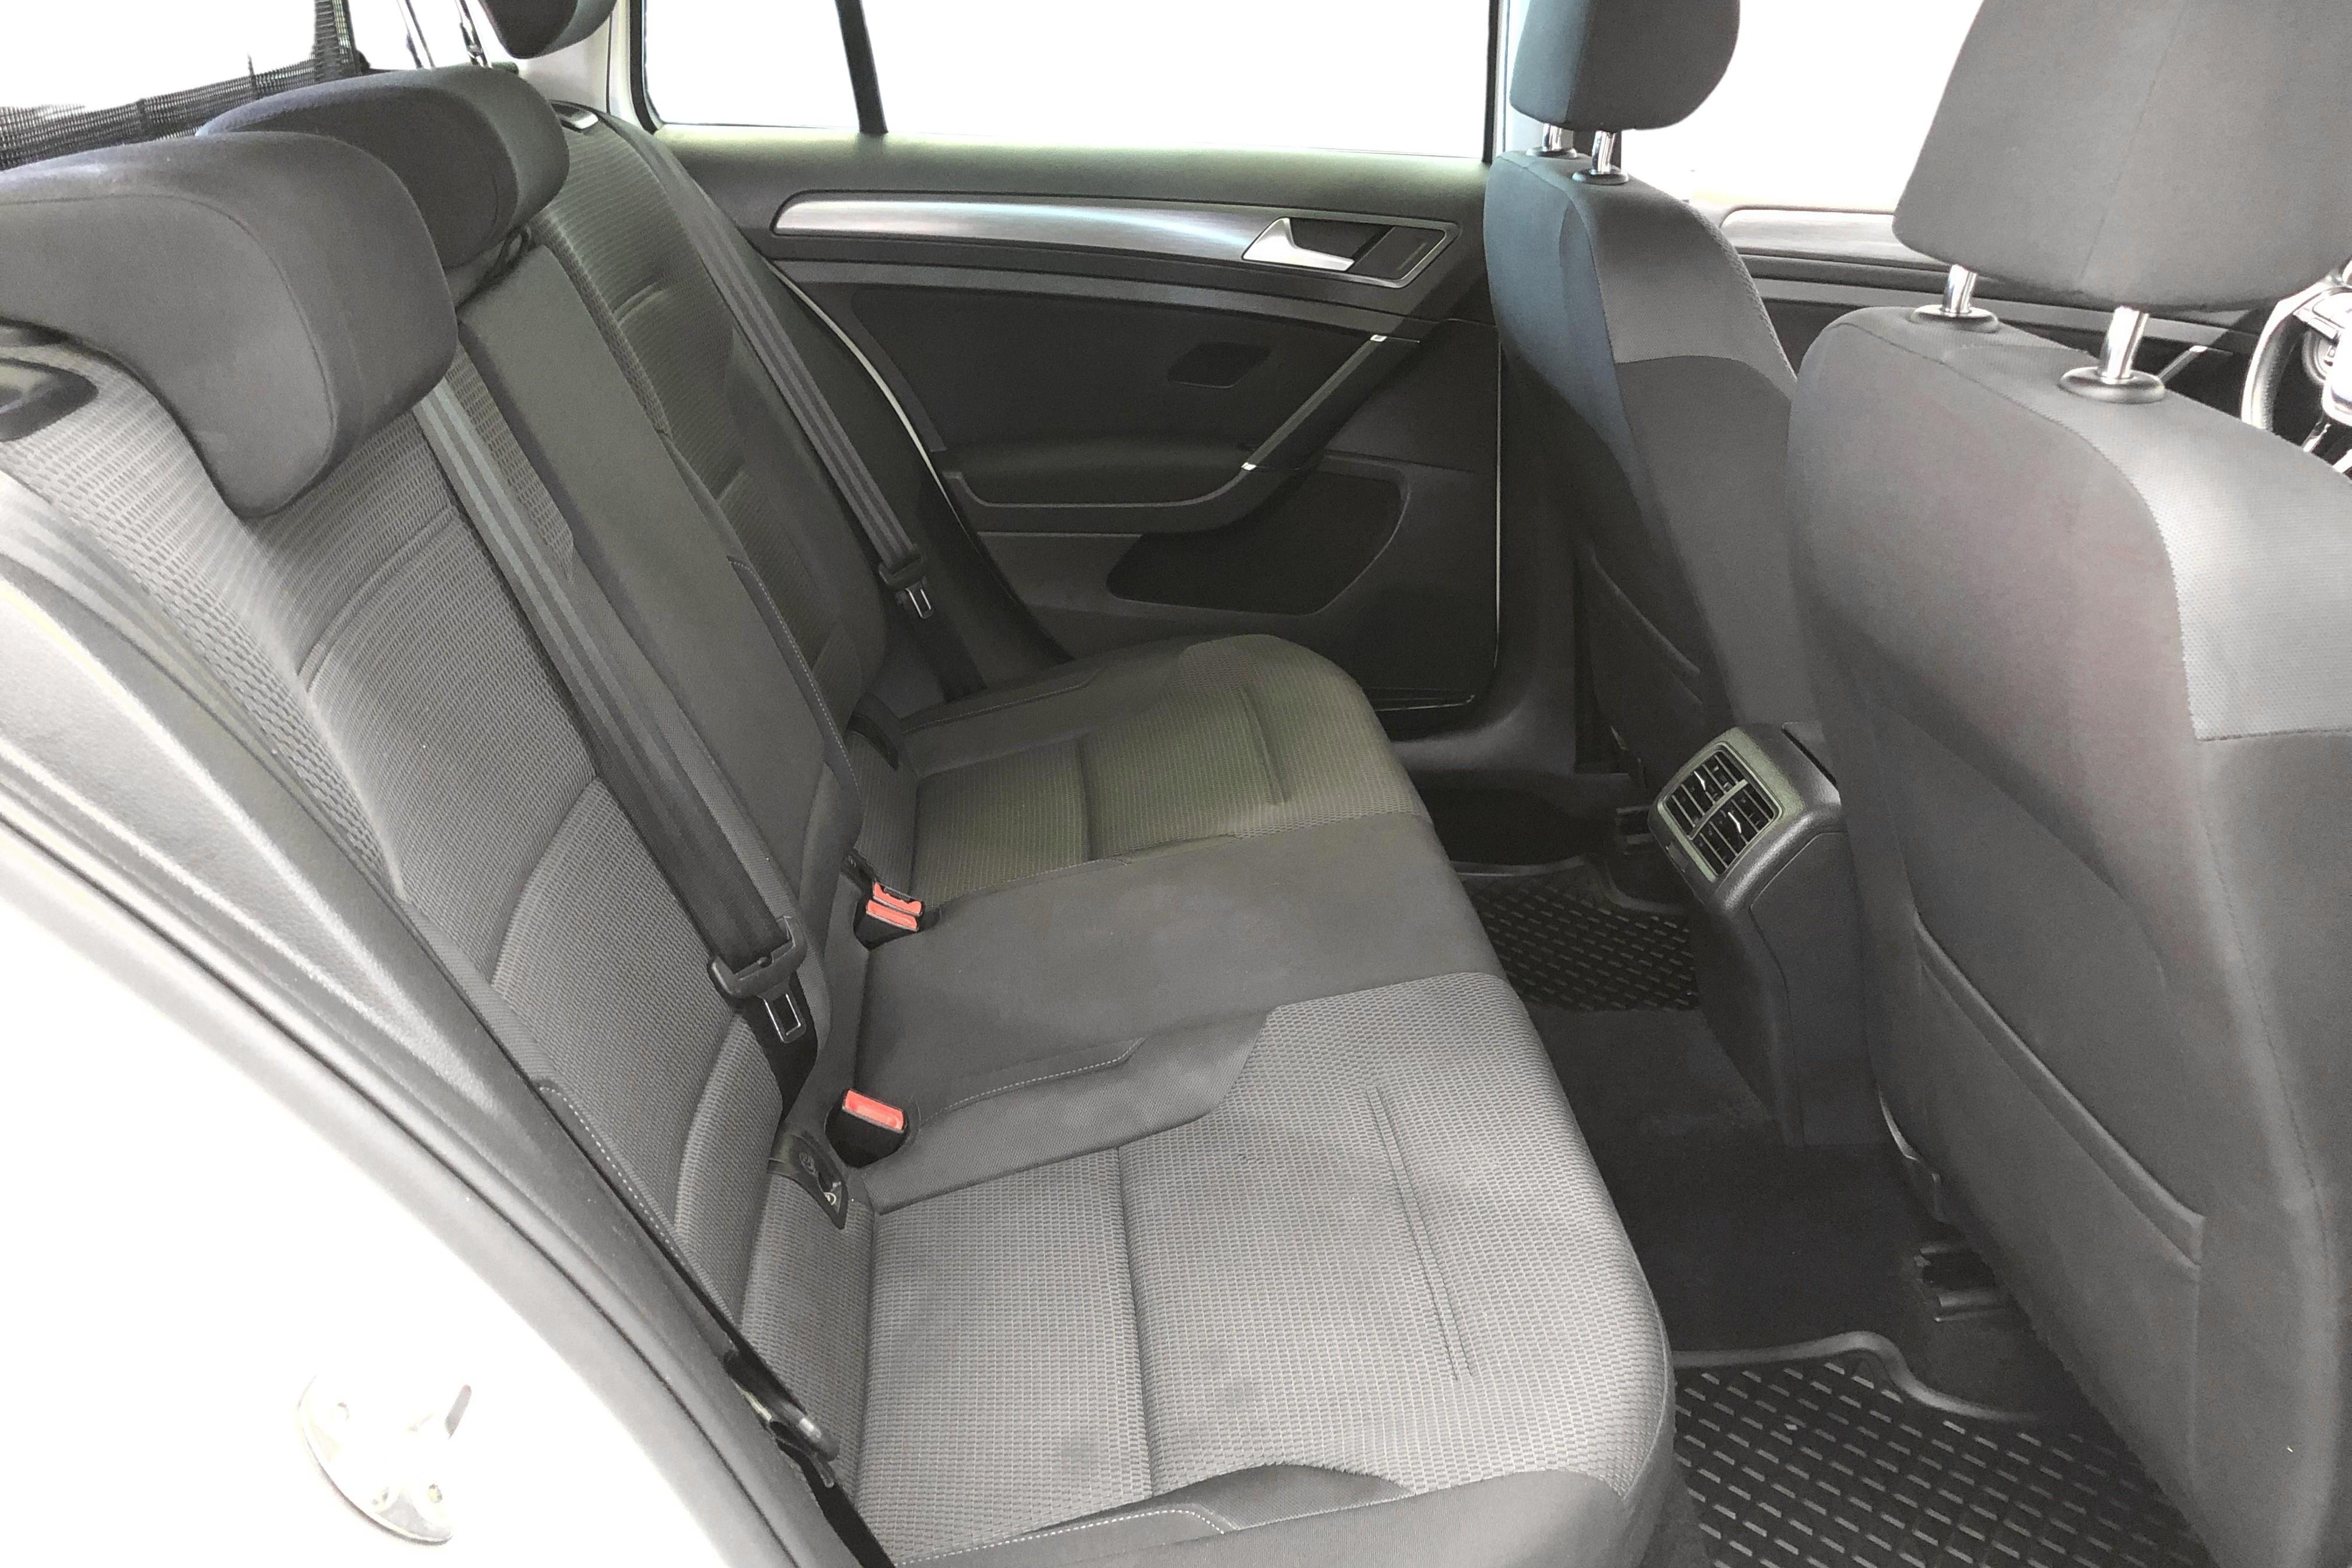 VW Golf VII 1.6 TDI Sportscombi (115hk) - 11 302 mil - Automat - vit - 2019